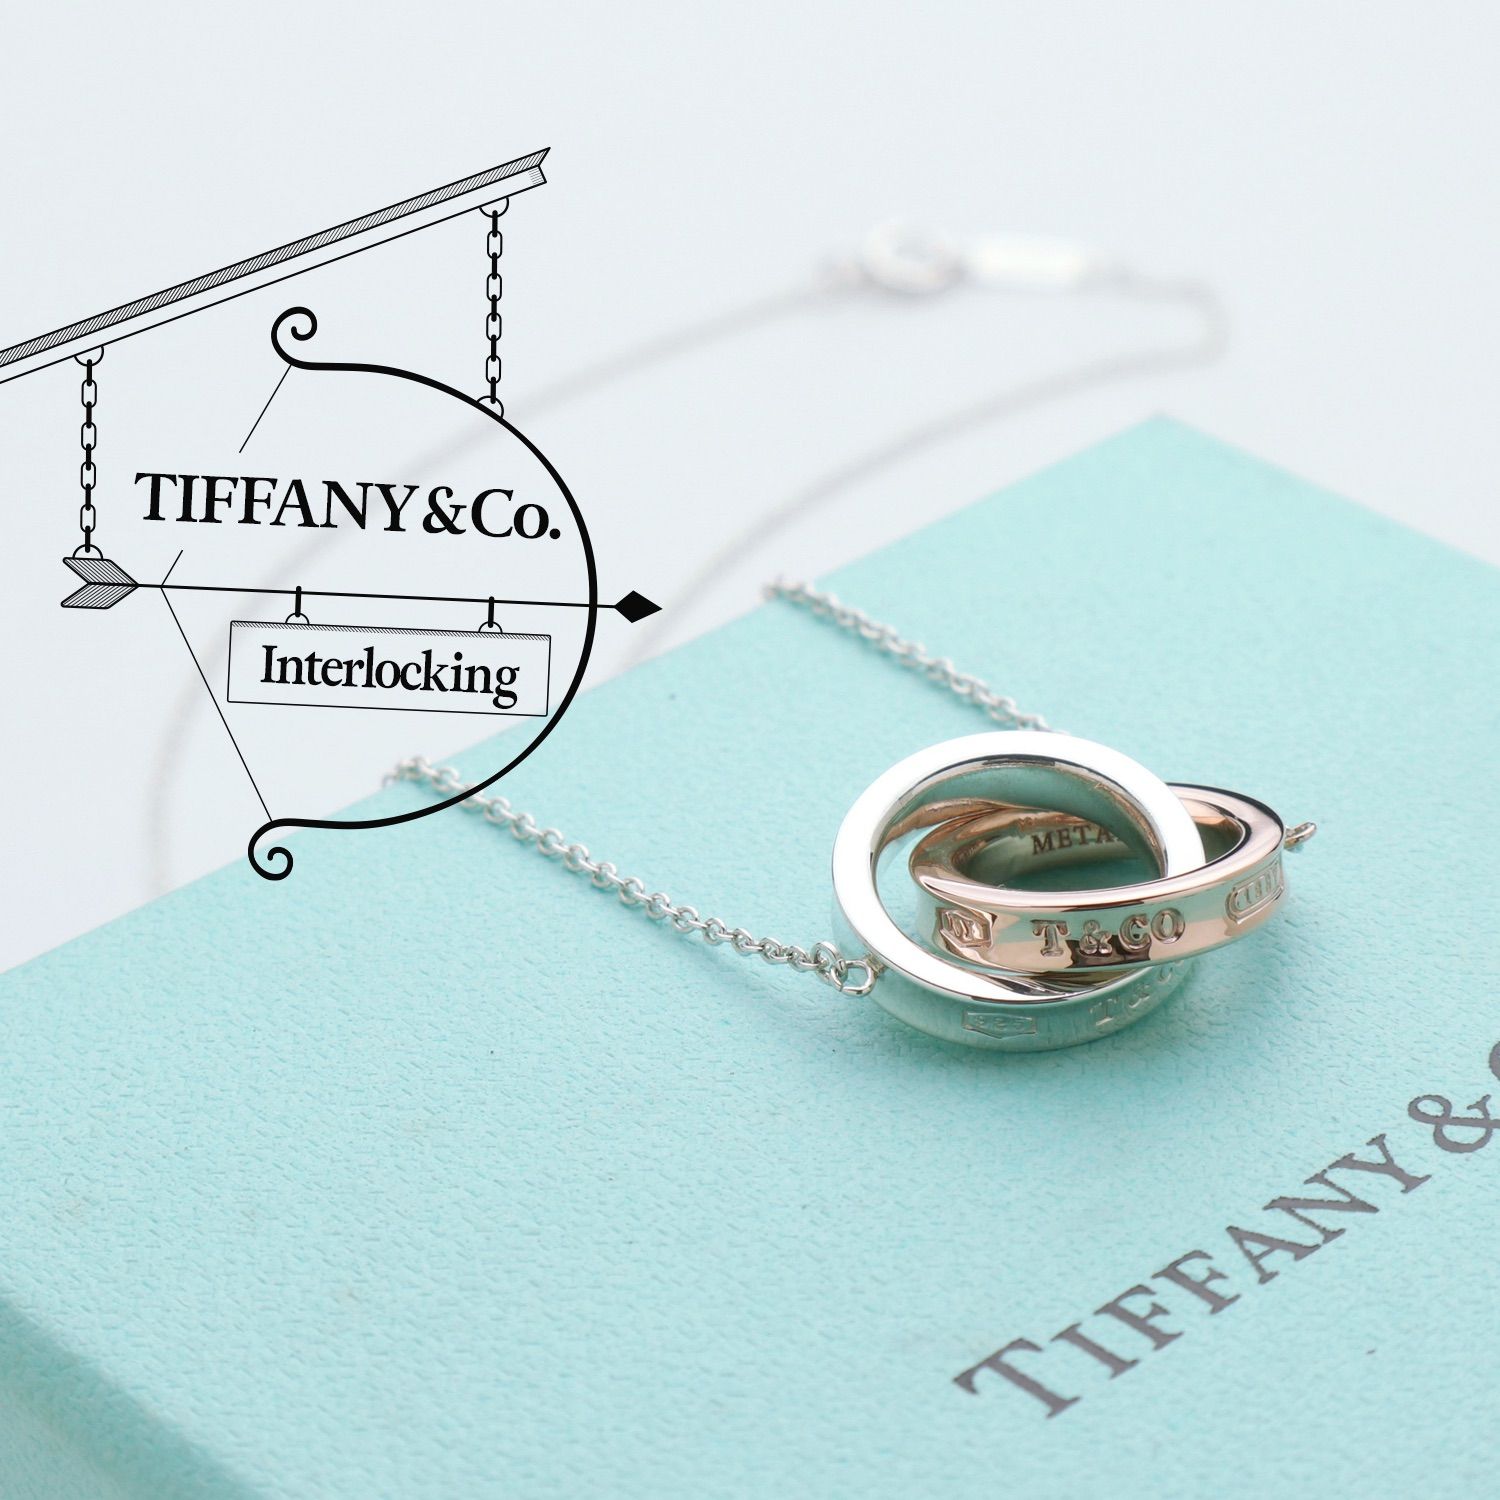 美品 TIFFANY&Co. ティファニー 1837 インターロッキング ネックレス ルベド メタル スターリング シルバー AG 925